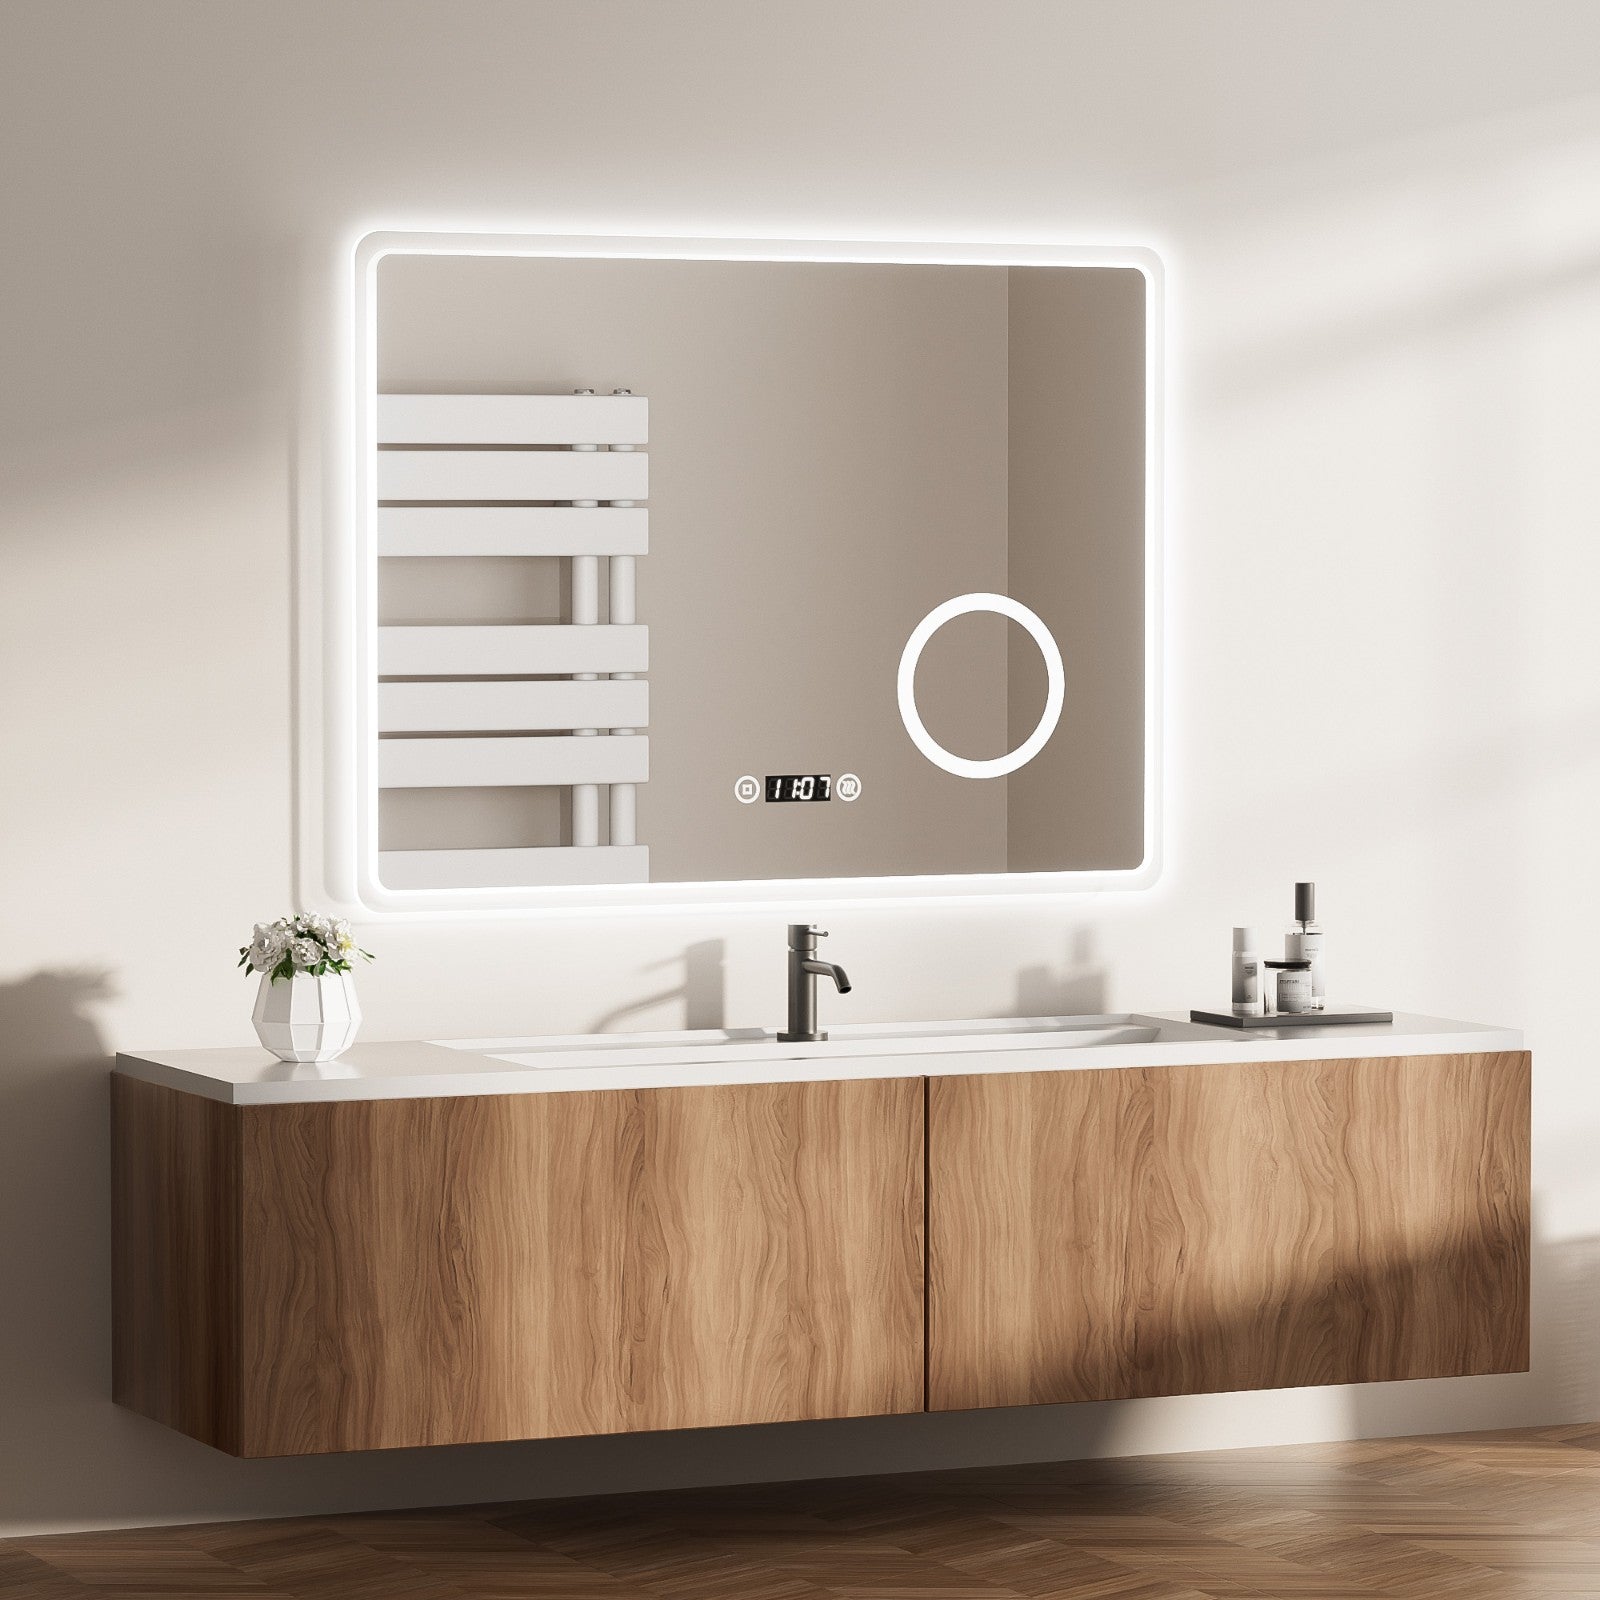 EMKE „LeeMi πX Plus“ Badezimmer Spiegel 80 x 60 cm mit Schminkspiegel, Touch-Schalter, Dimmung, Antibeschlag, 3 Farben, Uhr